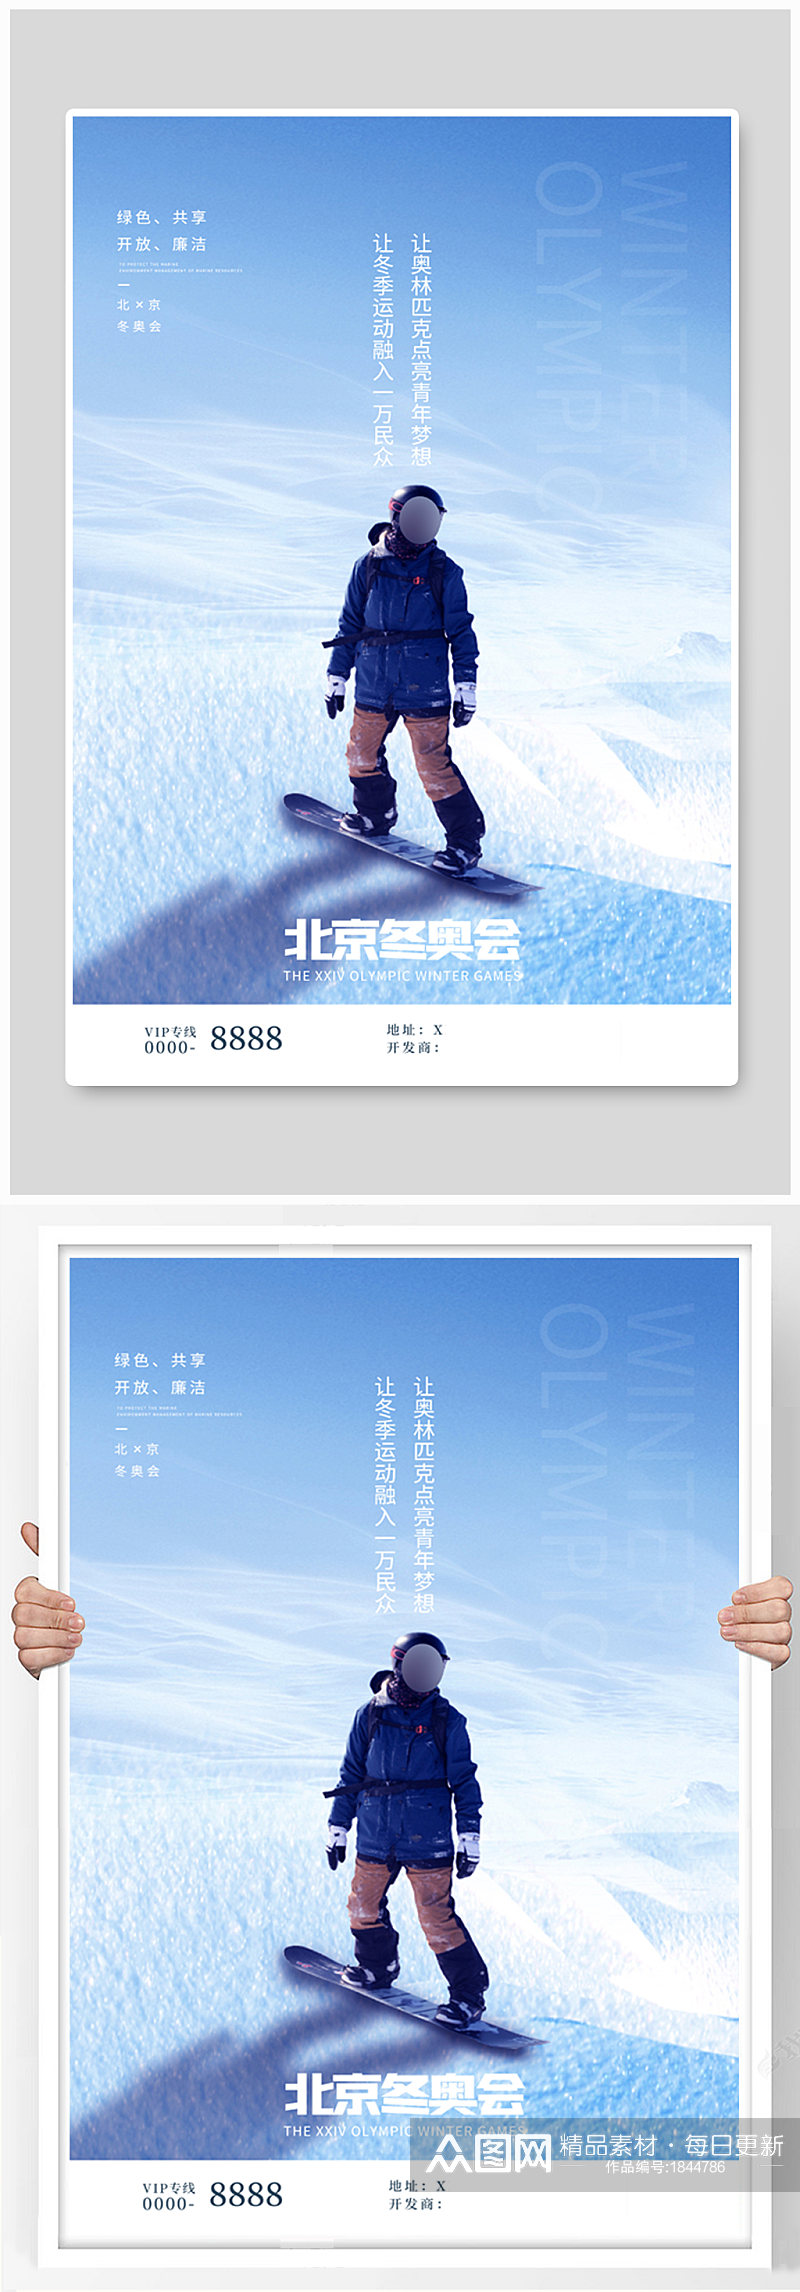 北京冬奥会滑雪白色简约海报素材